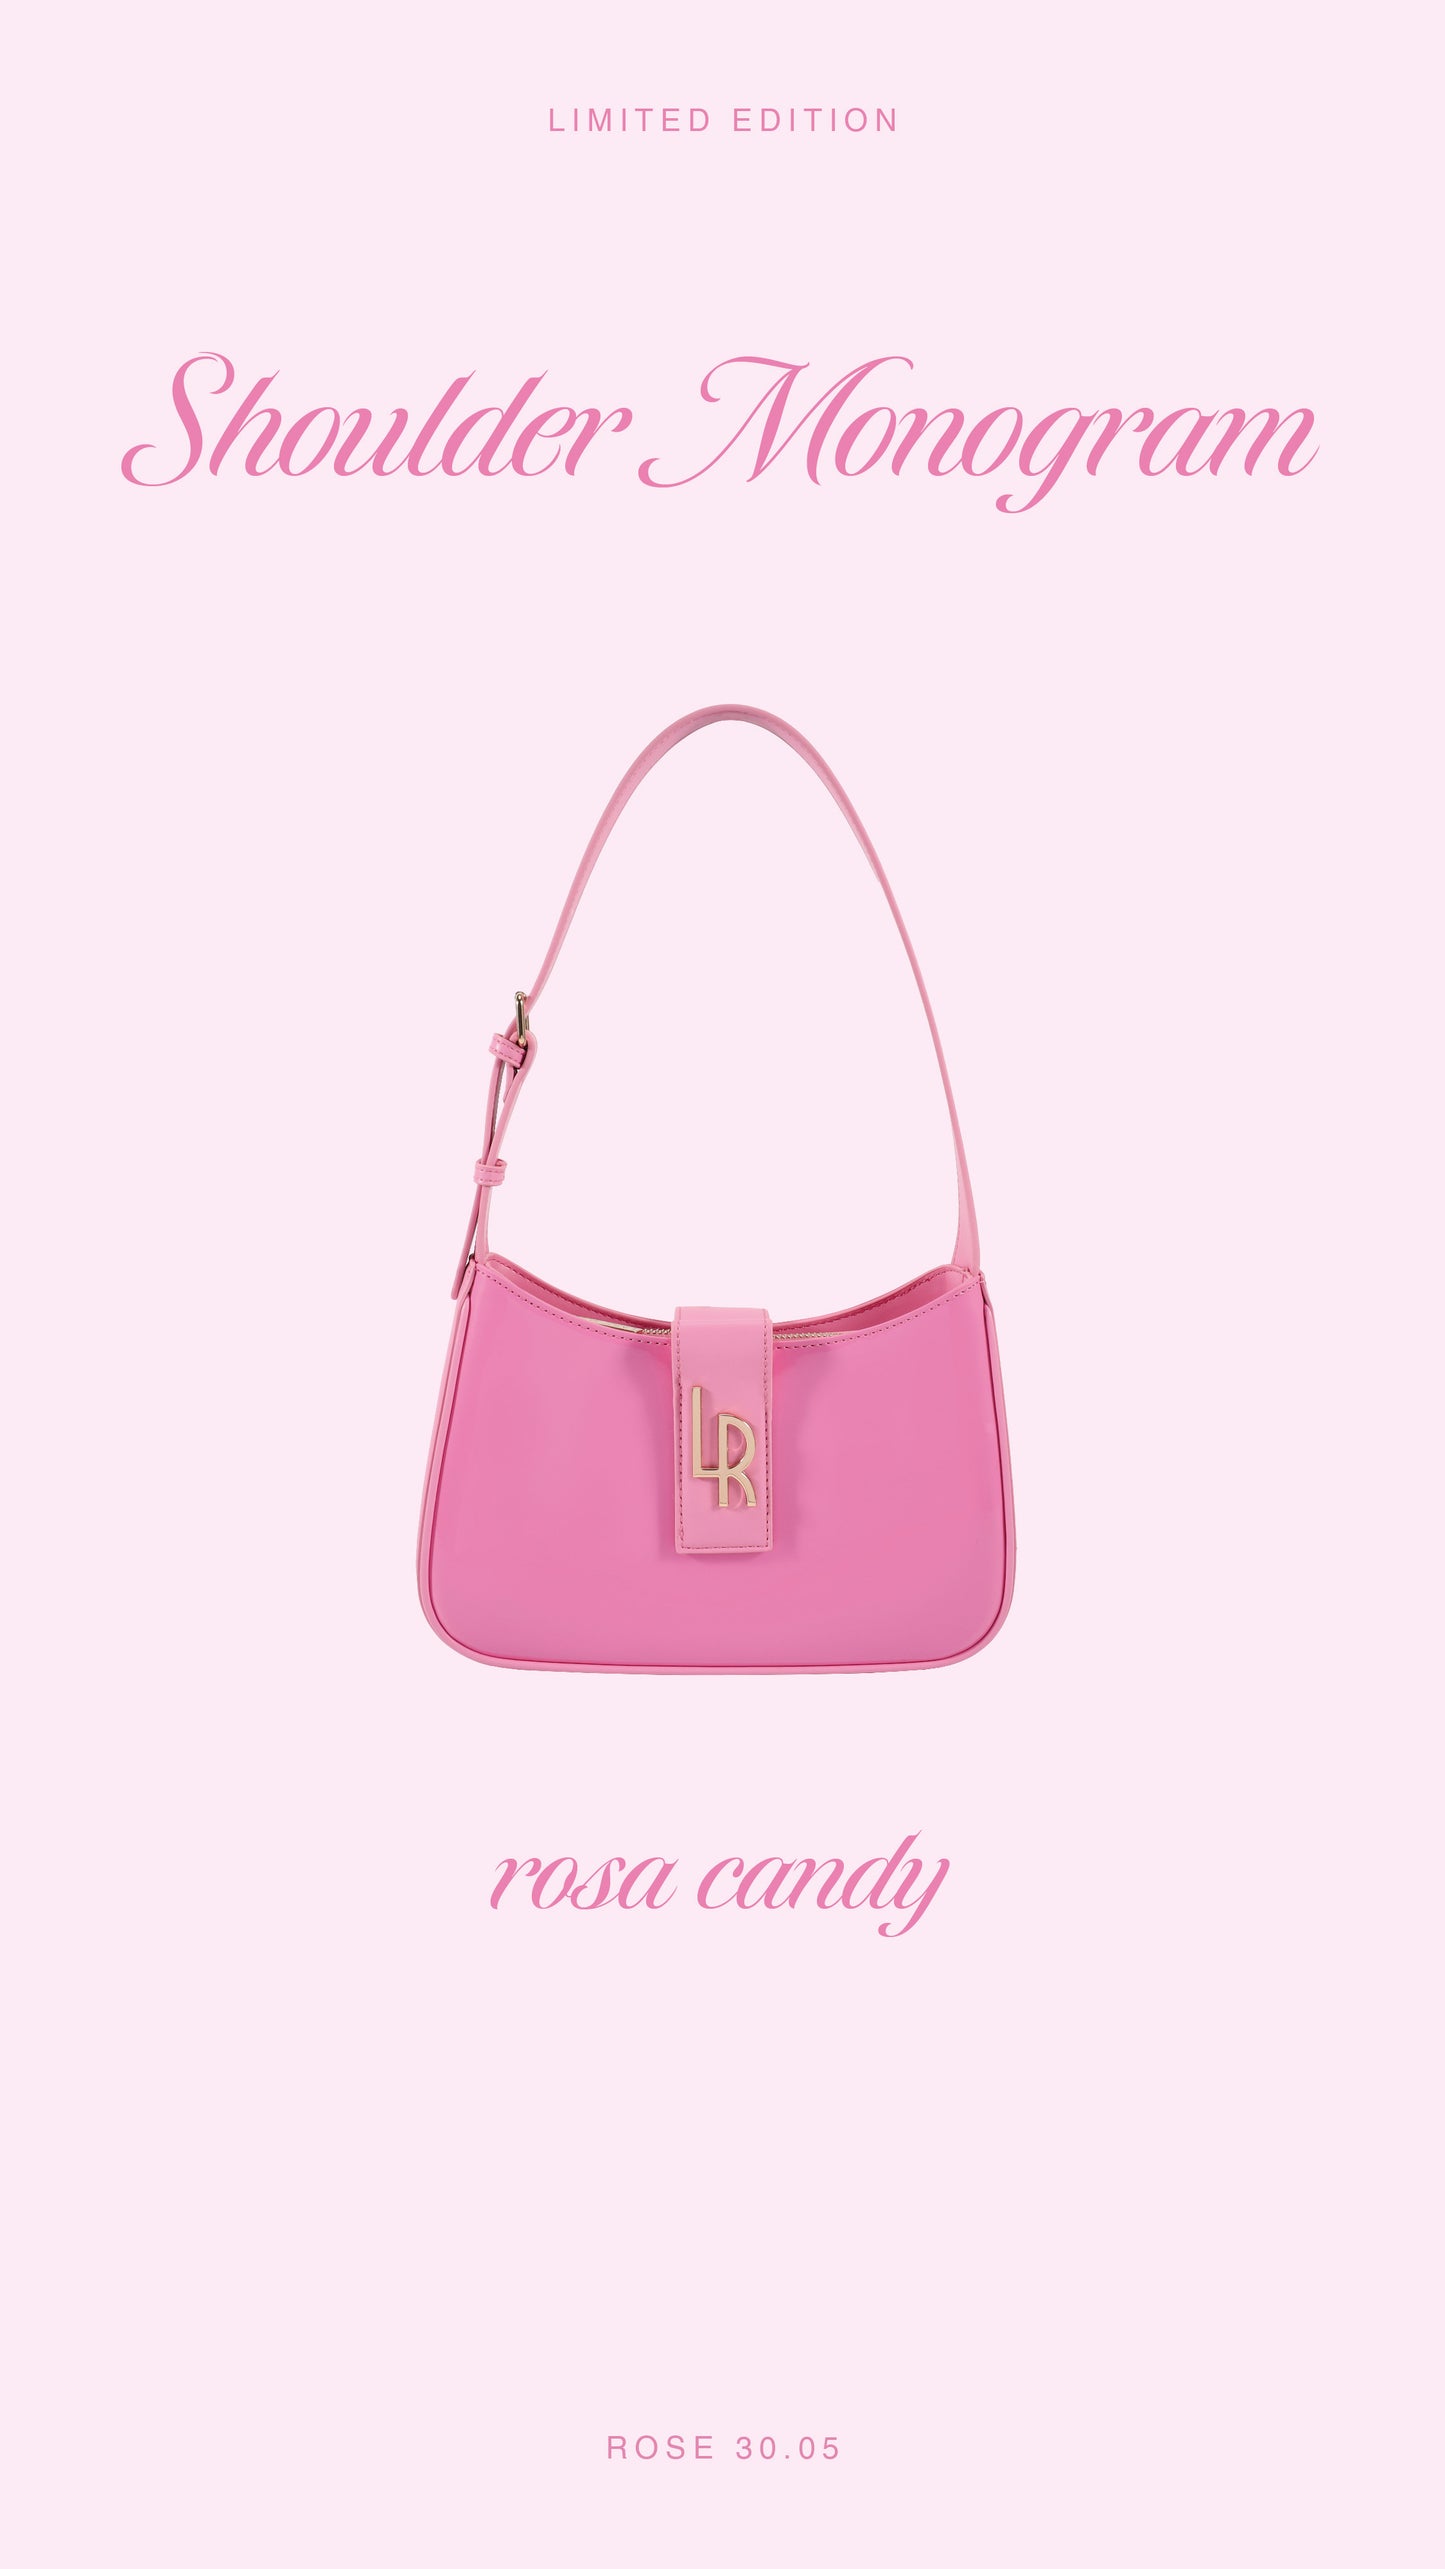 ROSE 30.05 LE Shoulder Bag - PINK CANDY